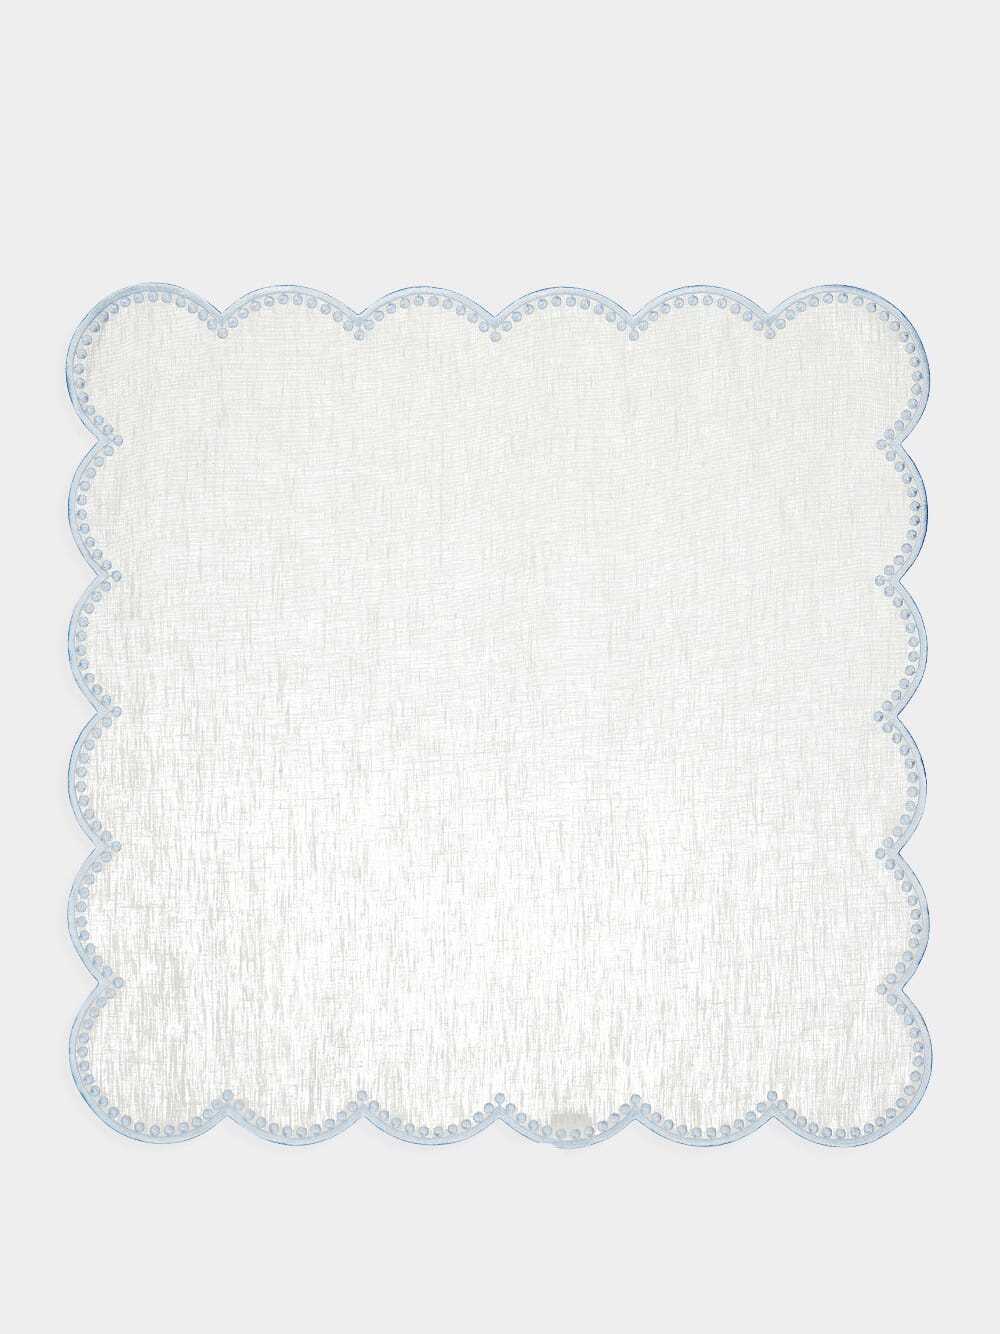 Cascais White Linen Napkin with Blue Dots Border